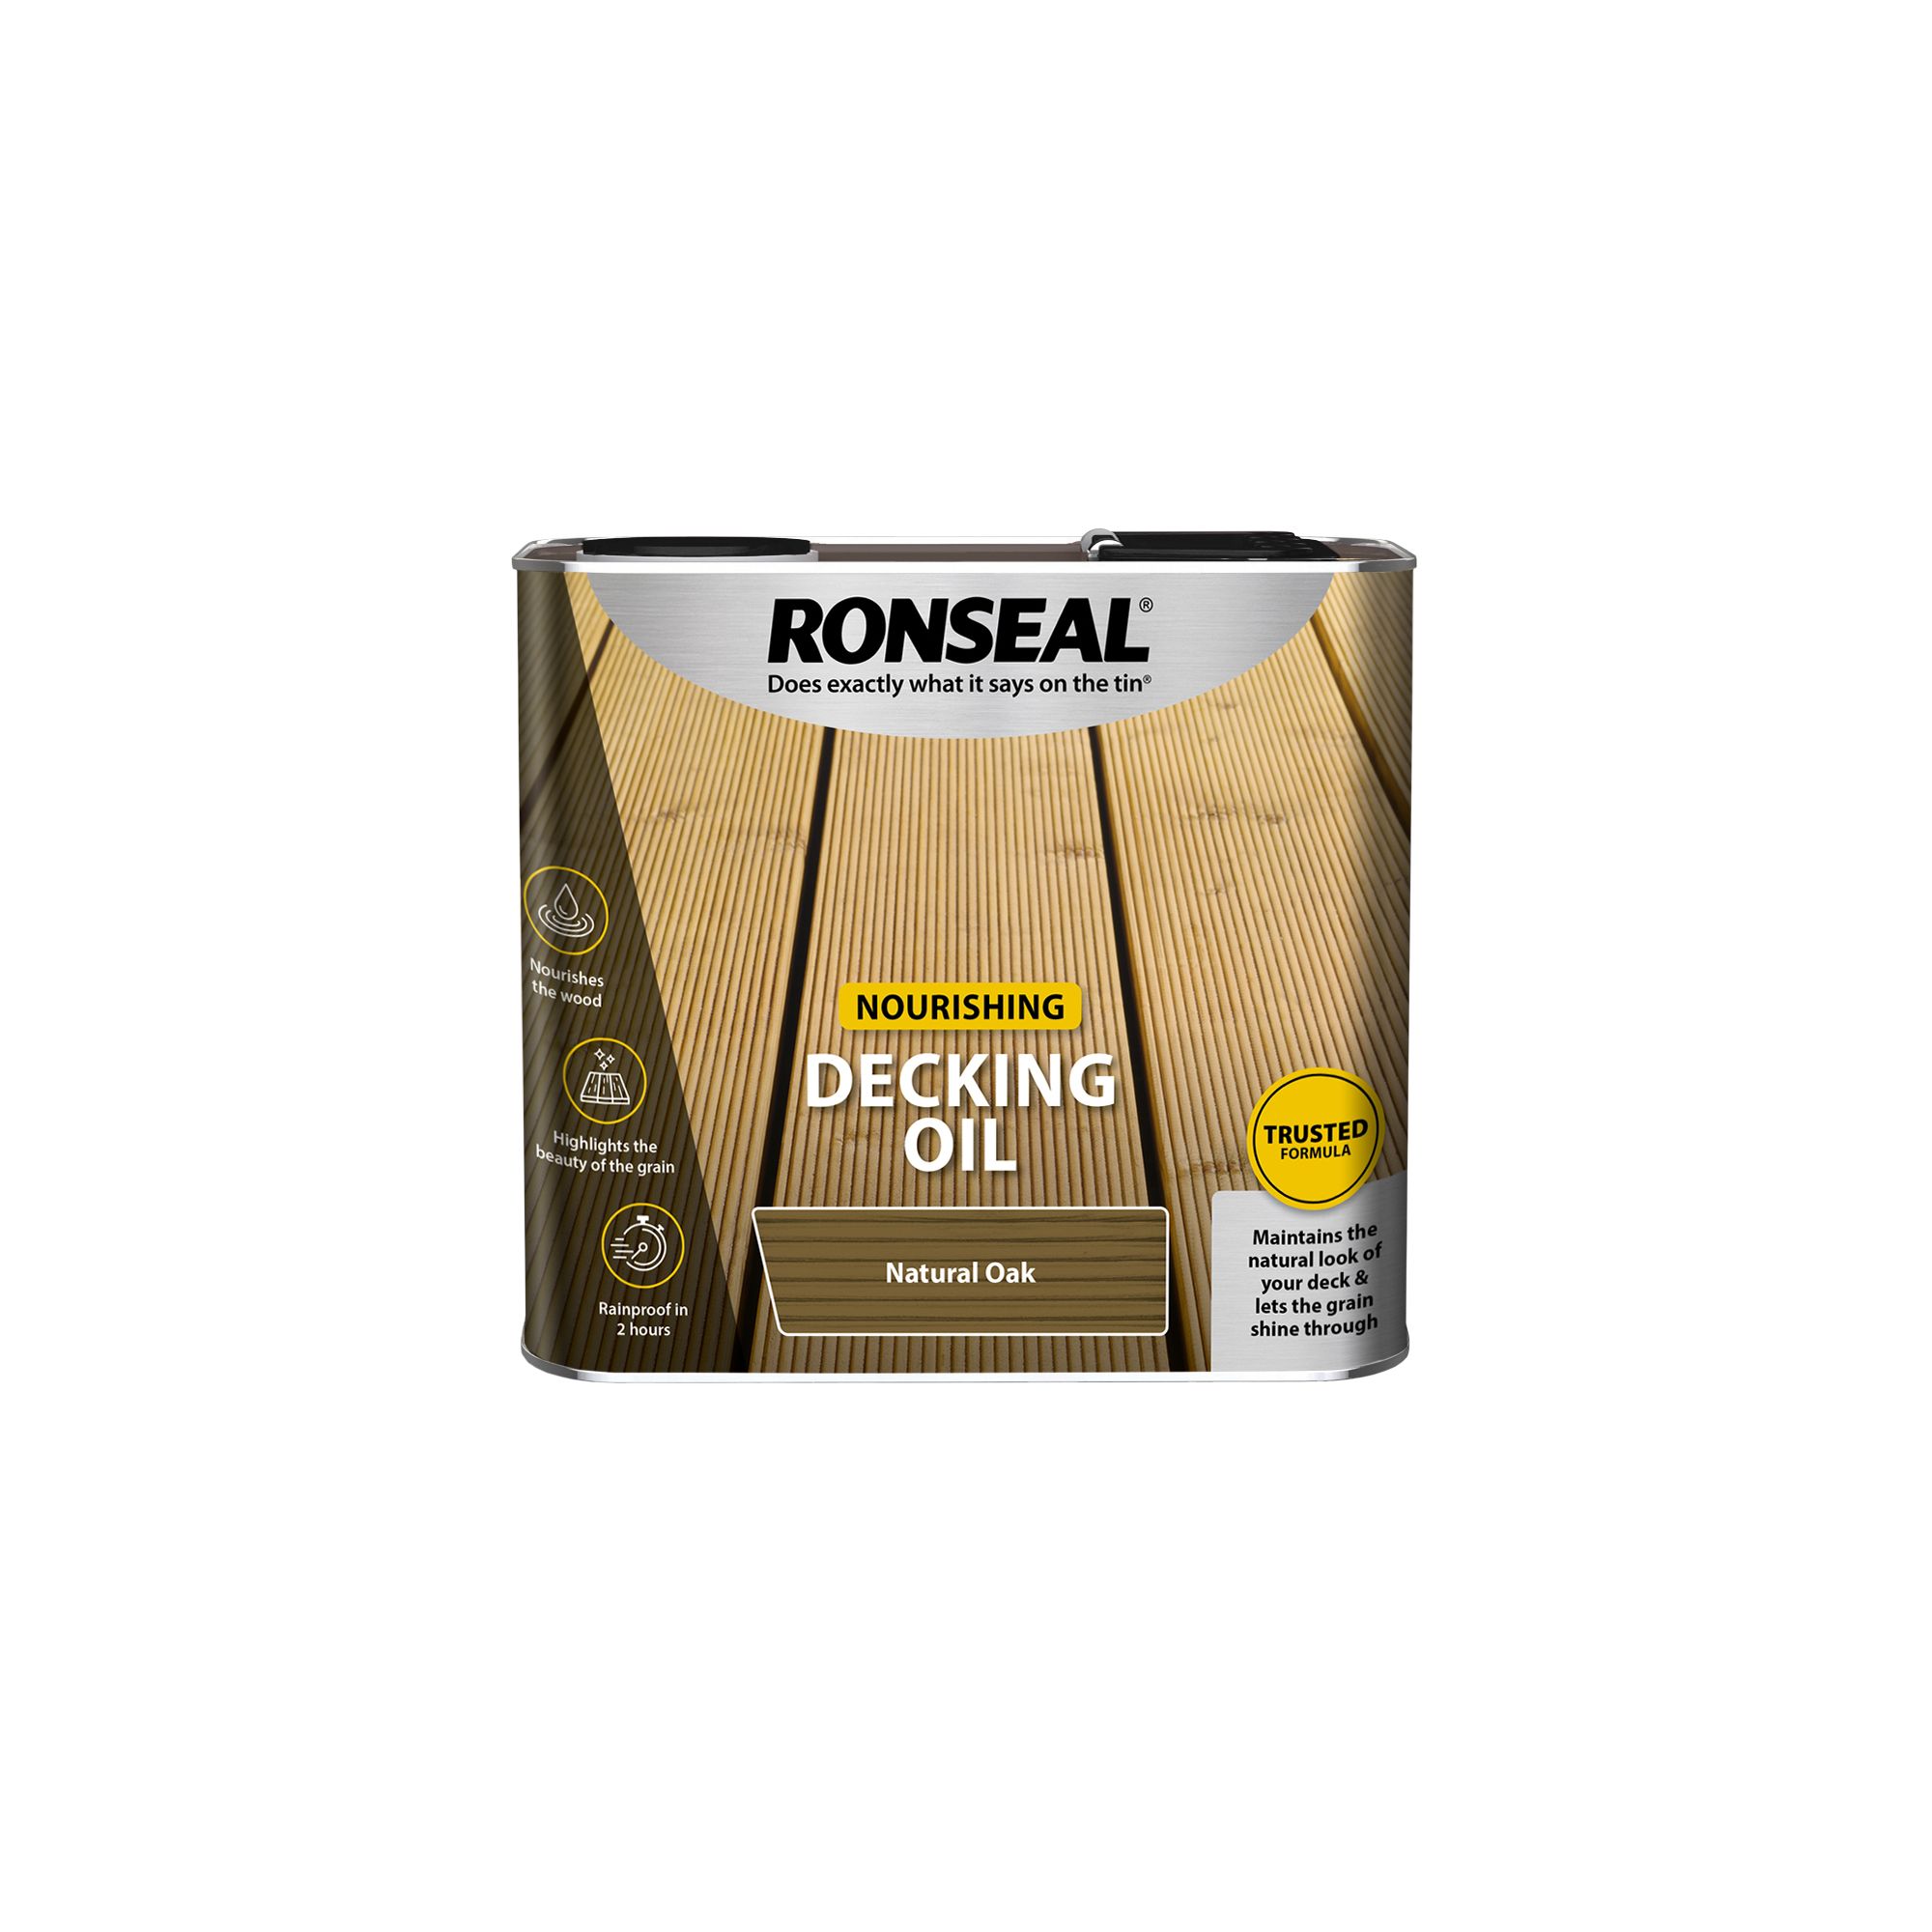 Ronseal Natural oak Matt UV resistant Decking Wood oil, 2.5L